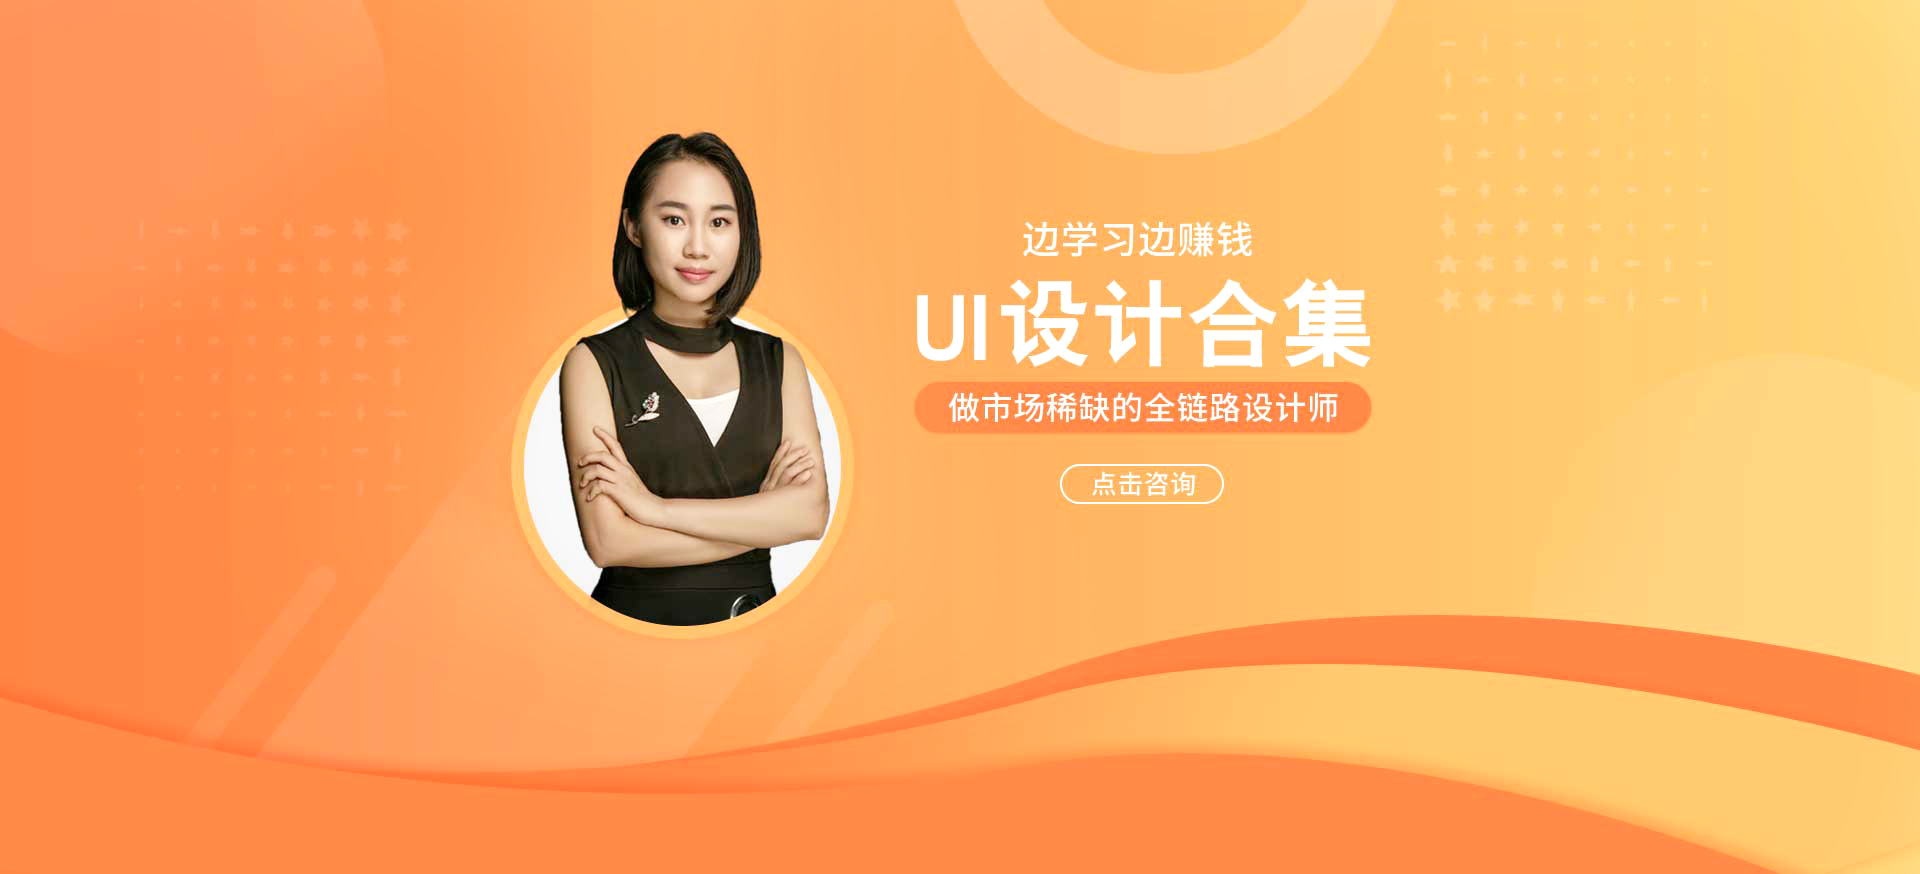 广州橙色优学教育科技有限公司